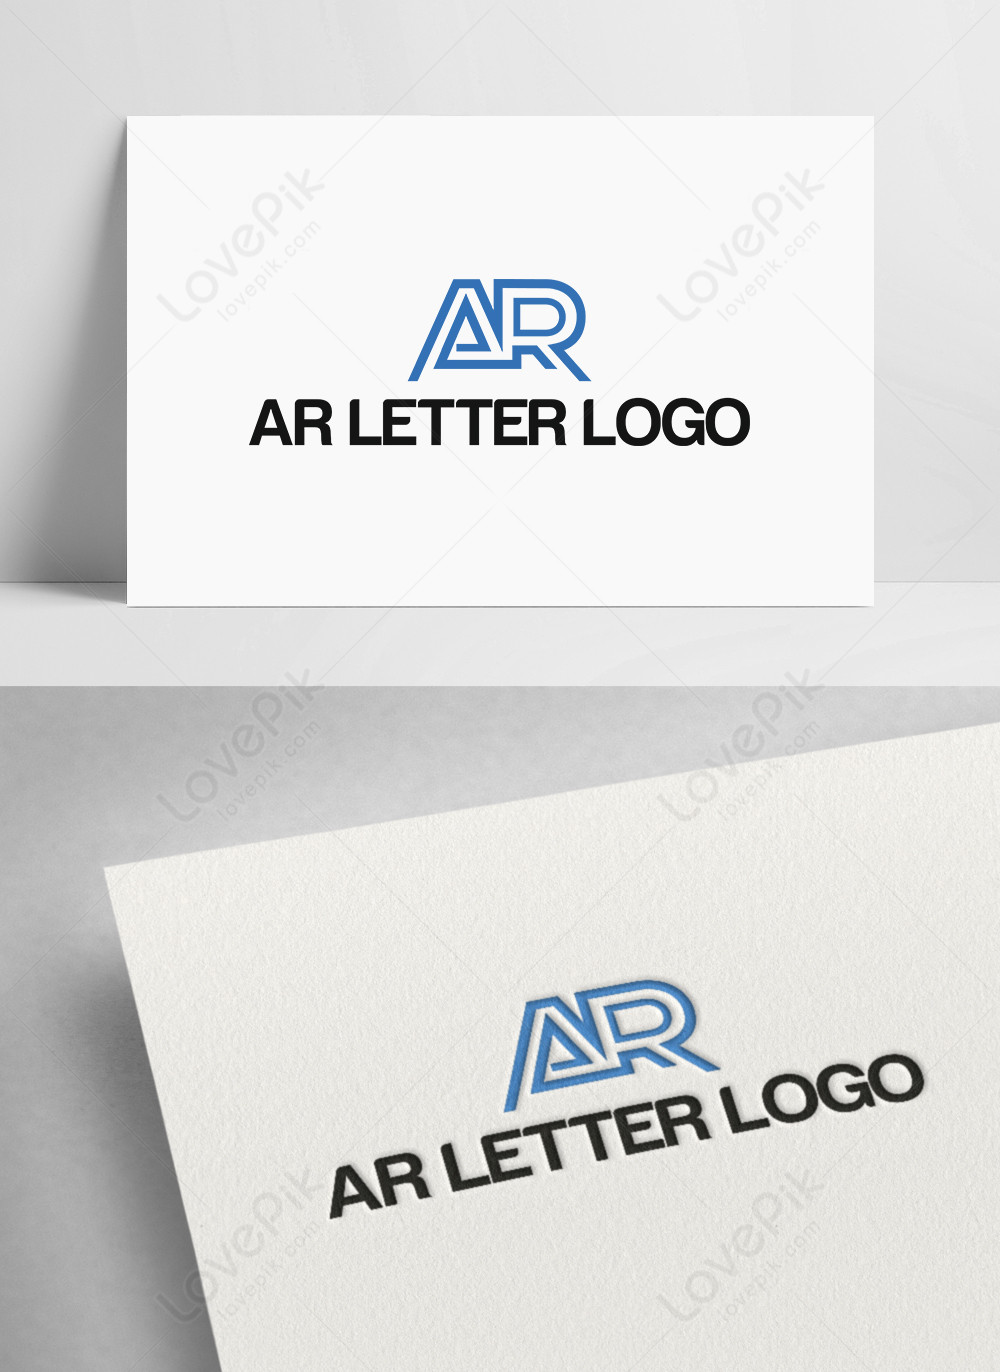 R Letter Logo by Abdul Gaffar on Dribbble